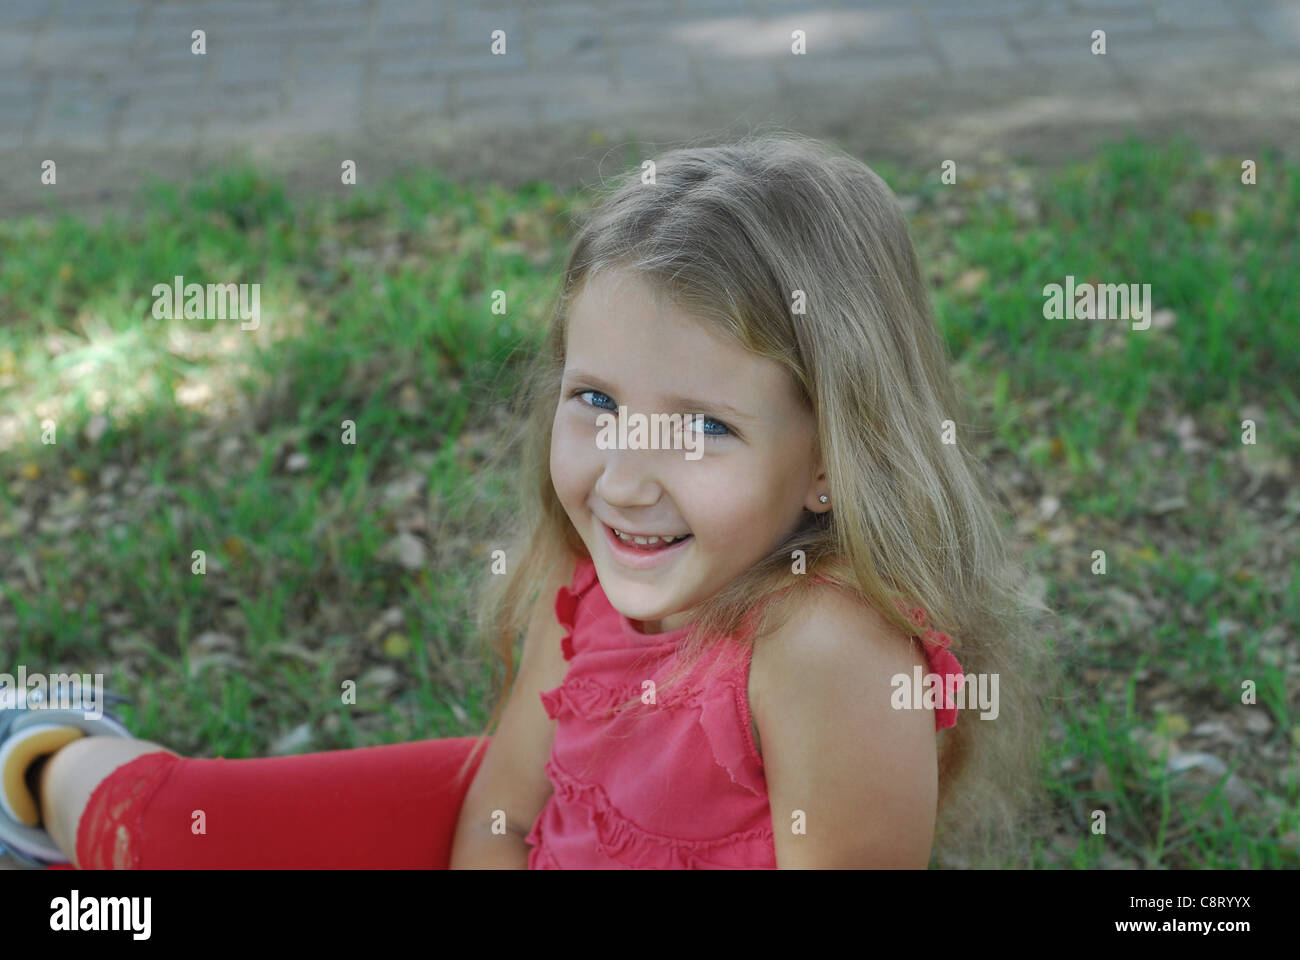 Retrato de risa chica en vestido rojo contra un fondo de hierba Foto de stock